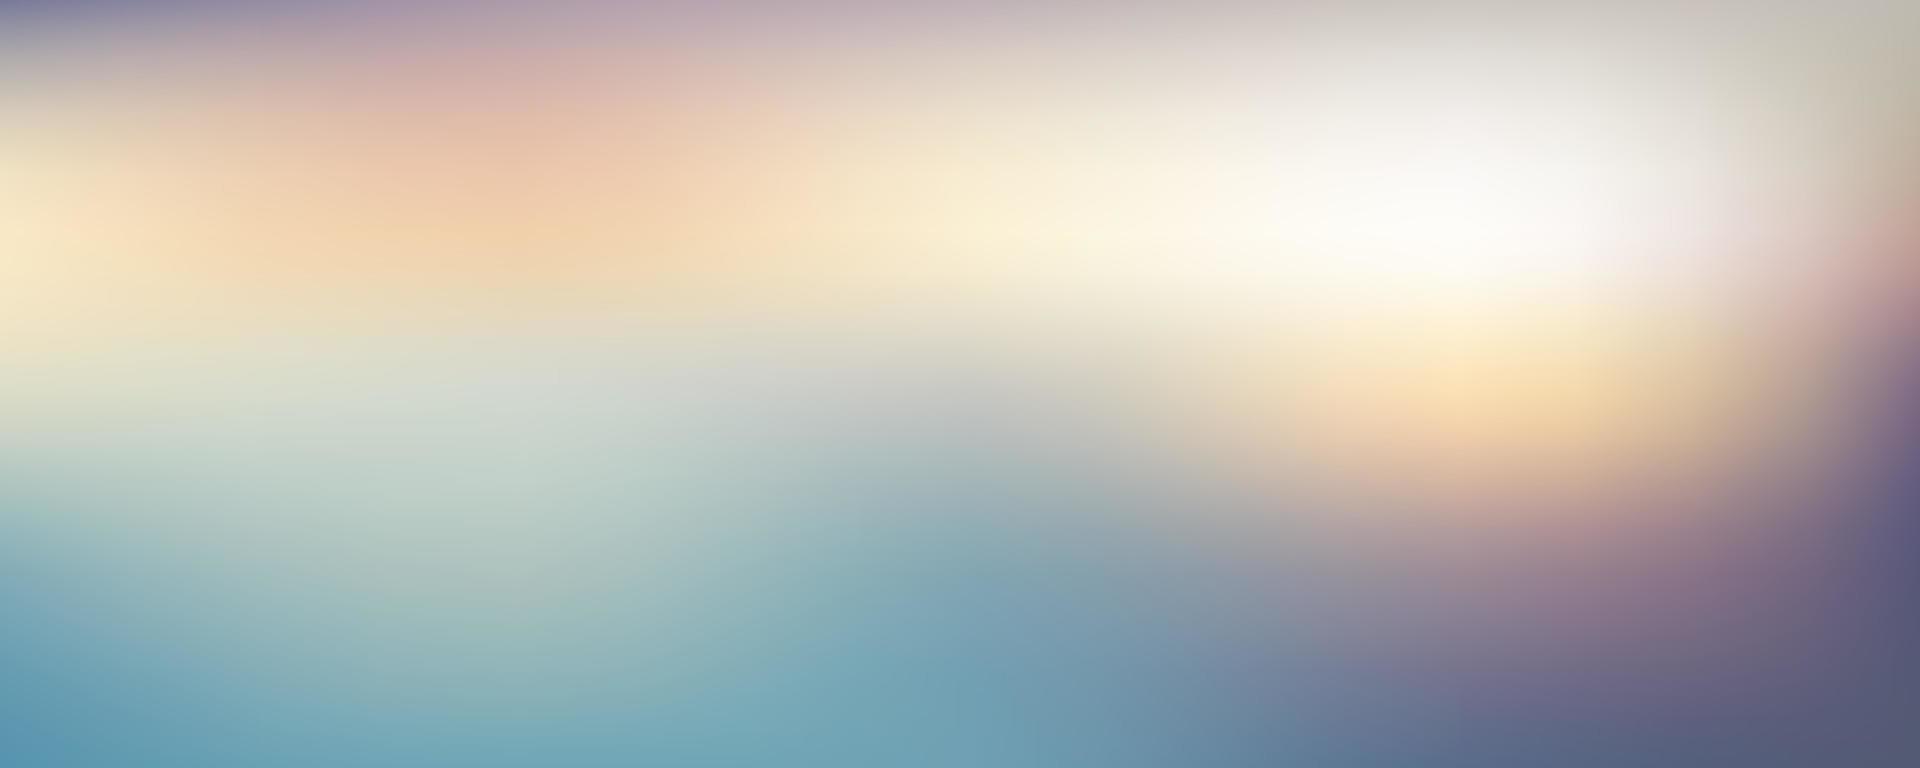 Fondo crepuscular degradado borroso abstracto. cielo colorido con luz solar. vector